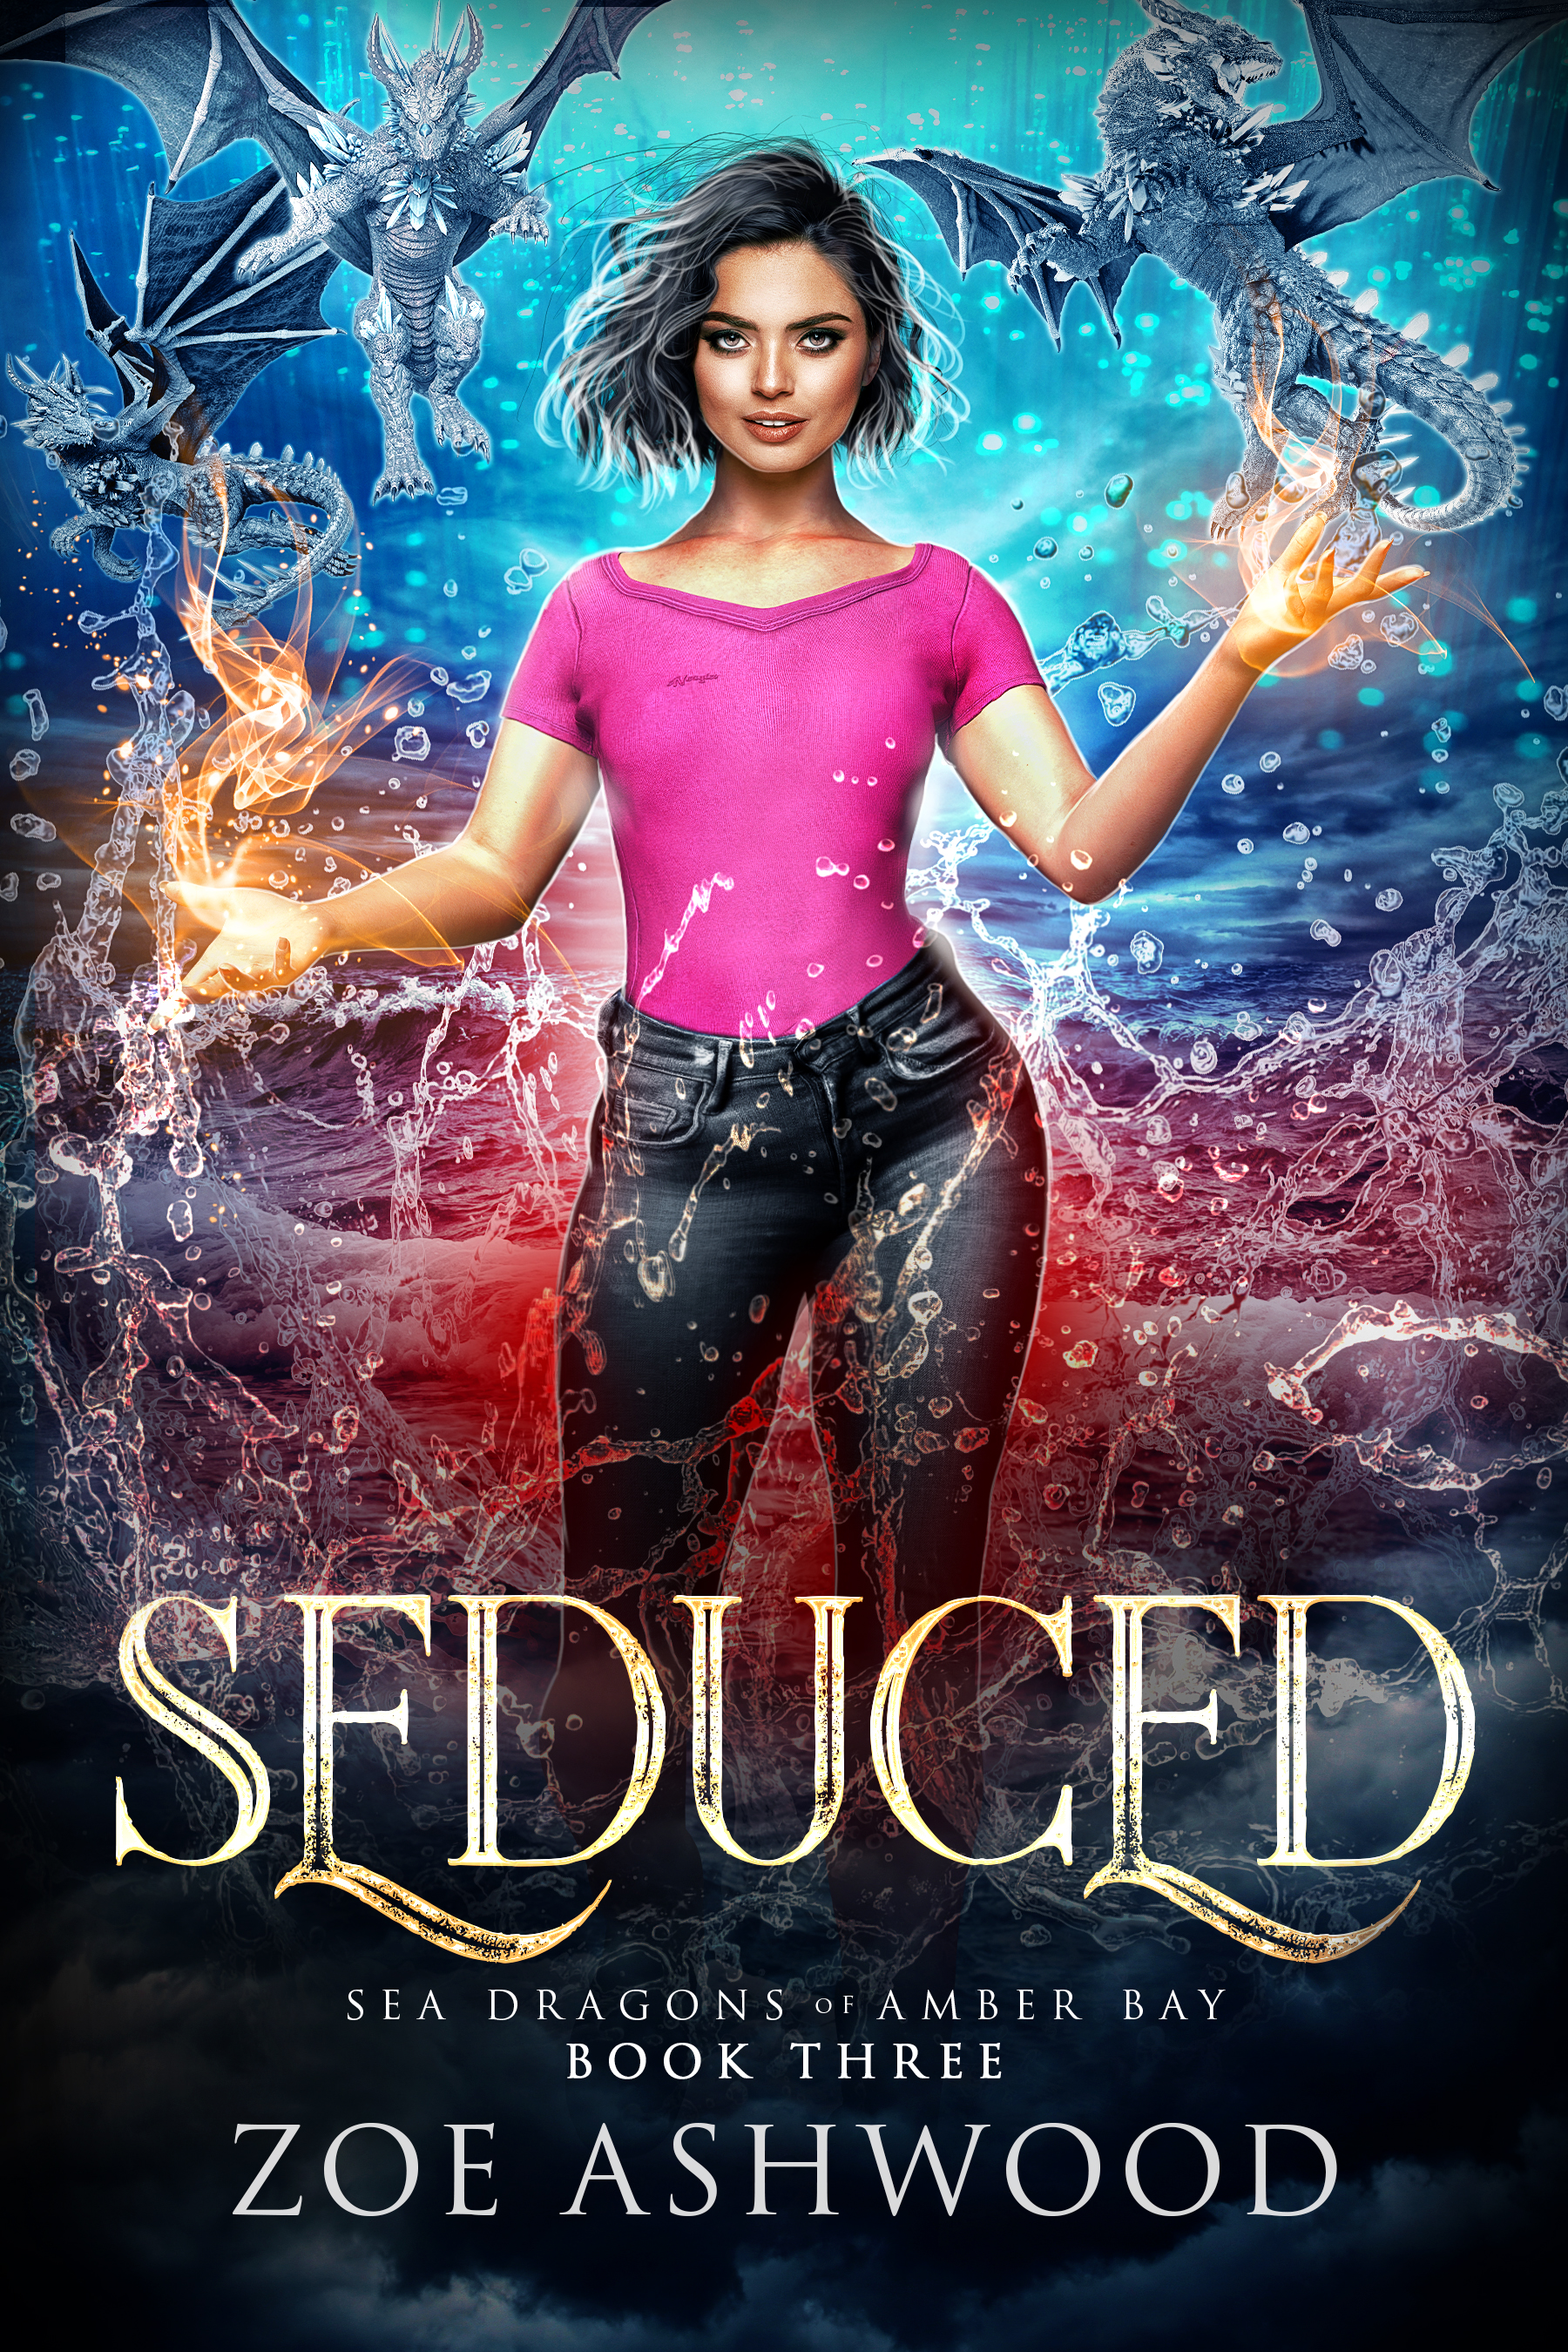 Seduced (Sea Dragons of Amber Bay #3) by Zoe Ashwood